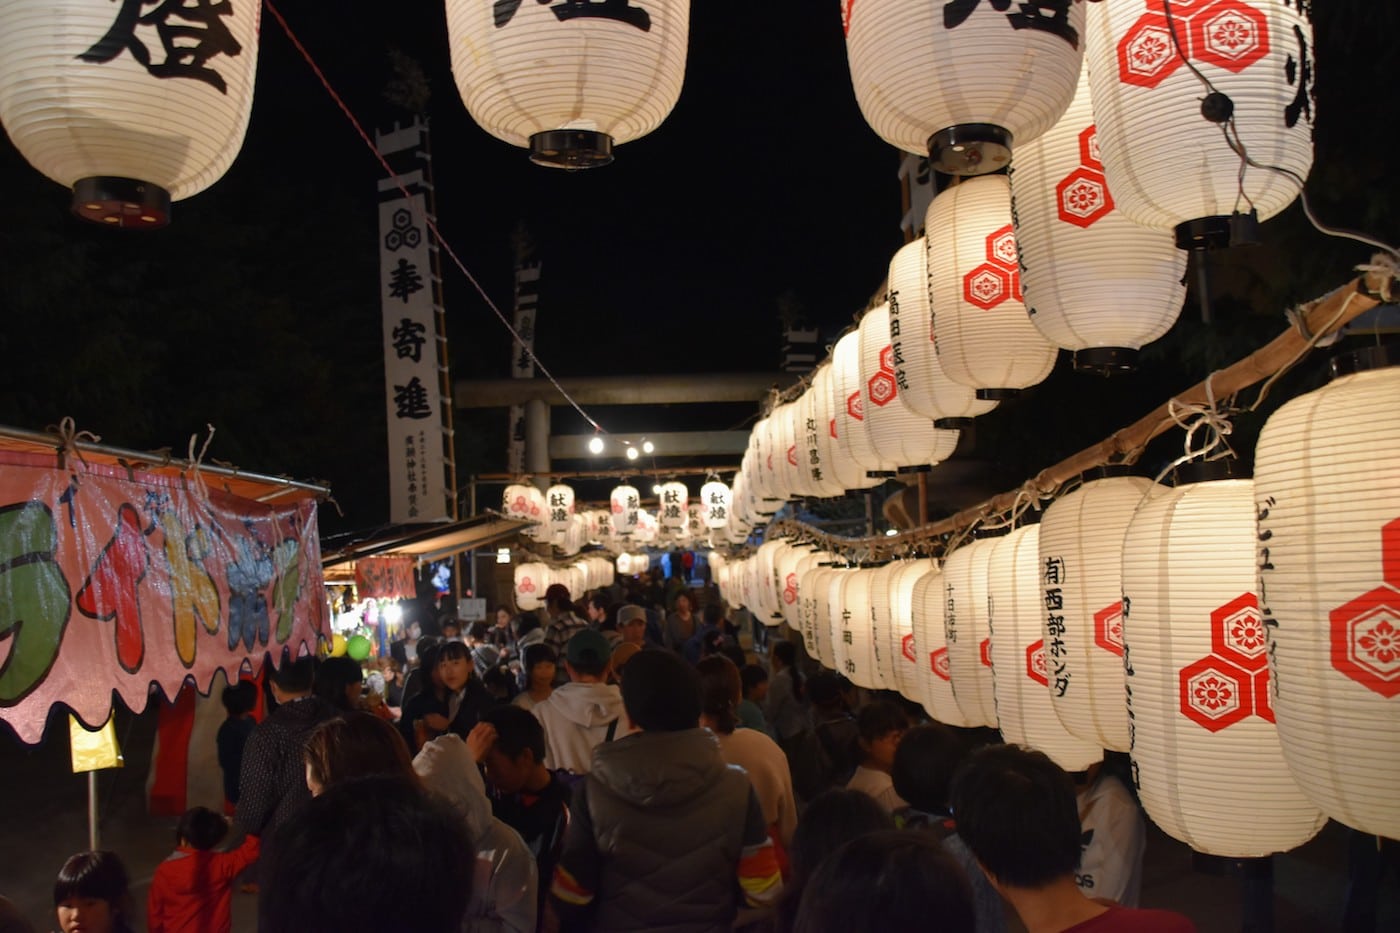 hirose shrine autumn festival hiroshima japan